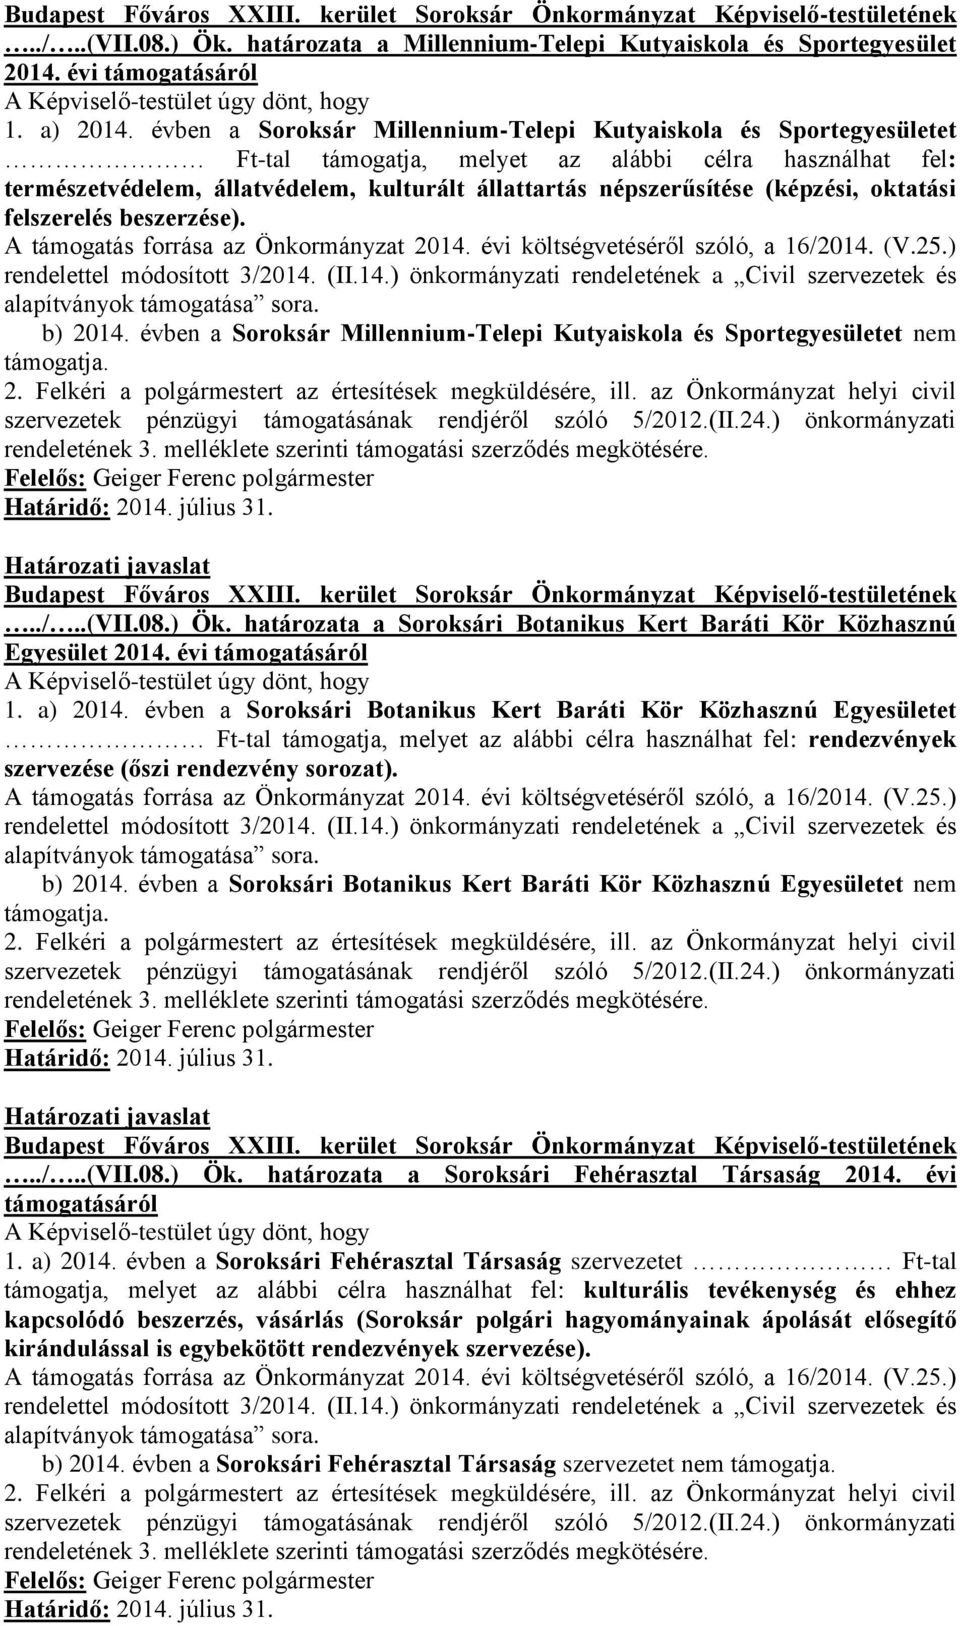 (képzési, oktatási felszerelés beszerzése). b) 2014. évben a Soroksár Millennium-Telepi Kutyaiskola és Sportegyesületet nem támogatja.../..(vii.08.) Ök.